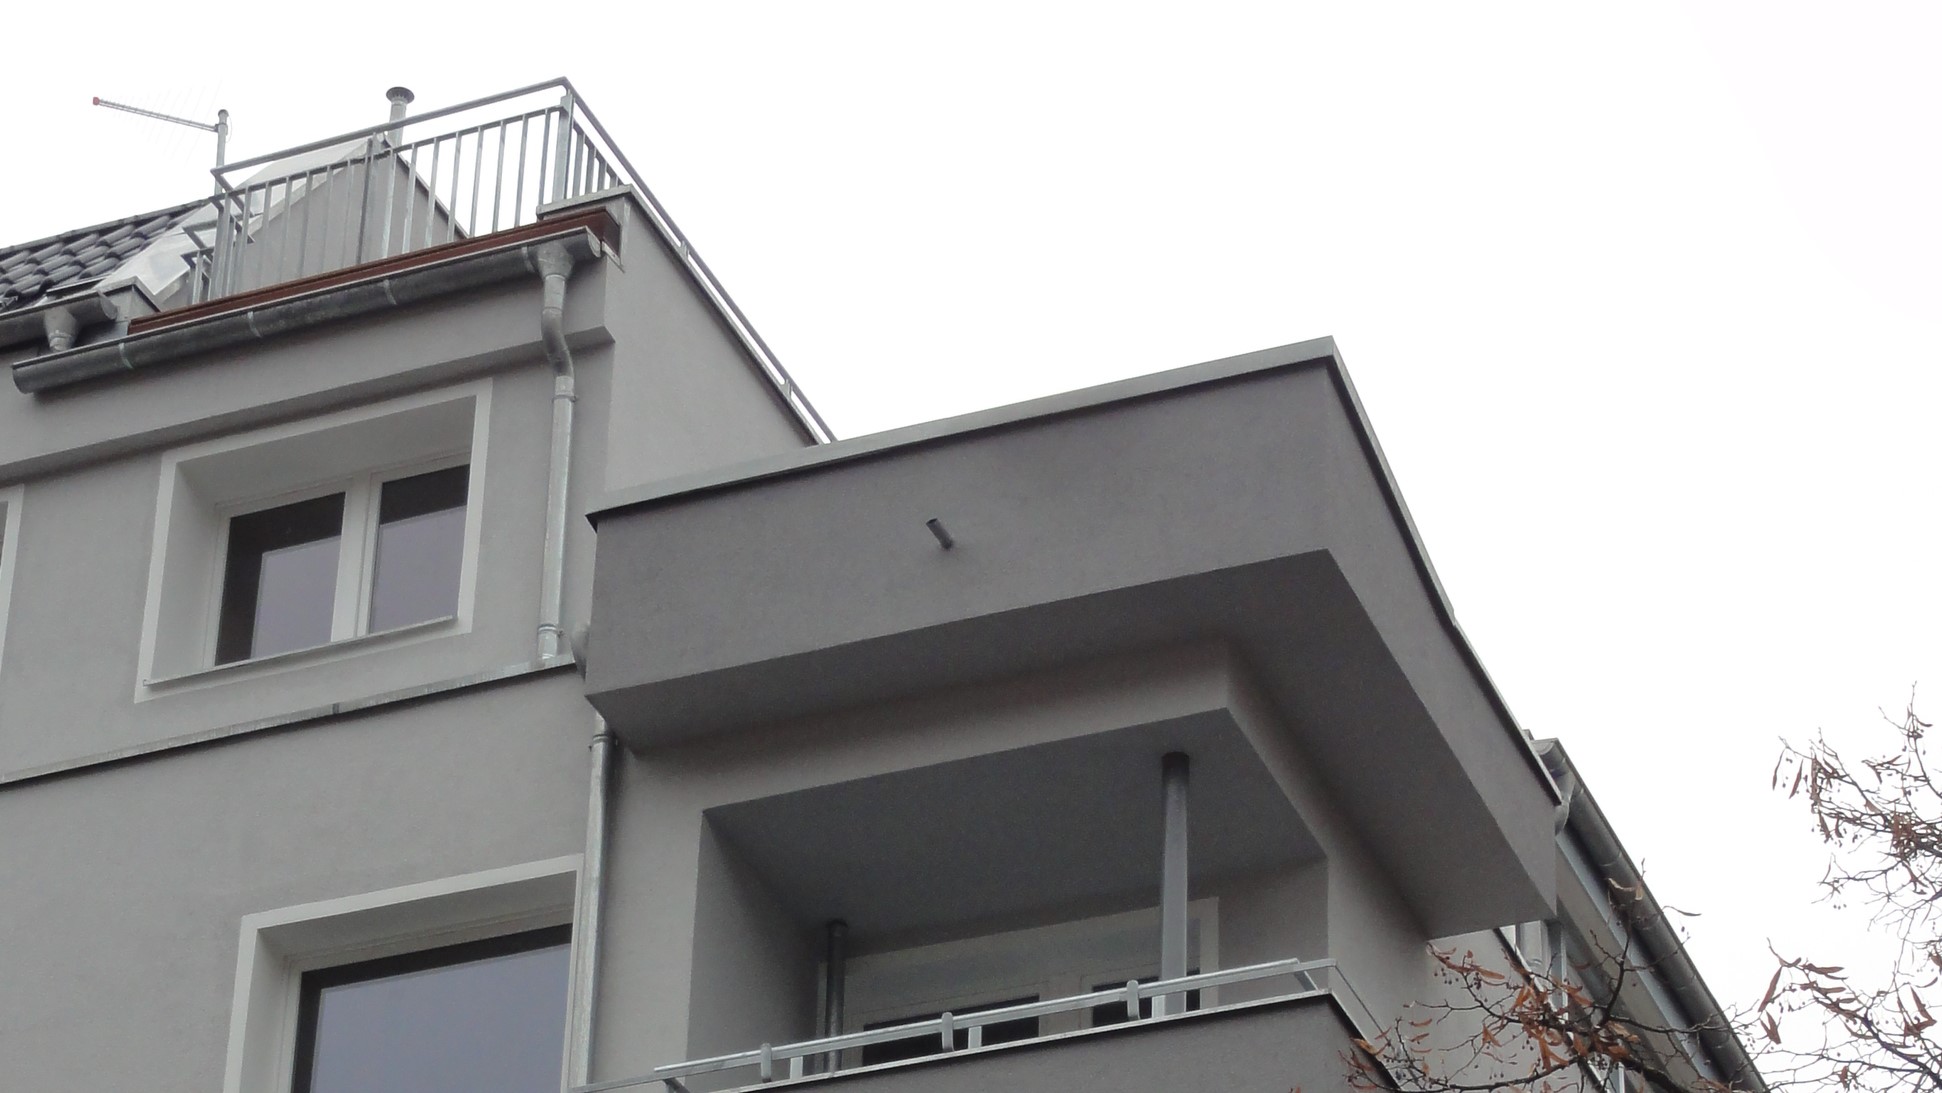 Fassaden- und Balkonsanierung am Altbau.